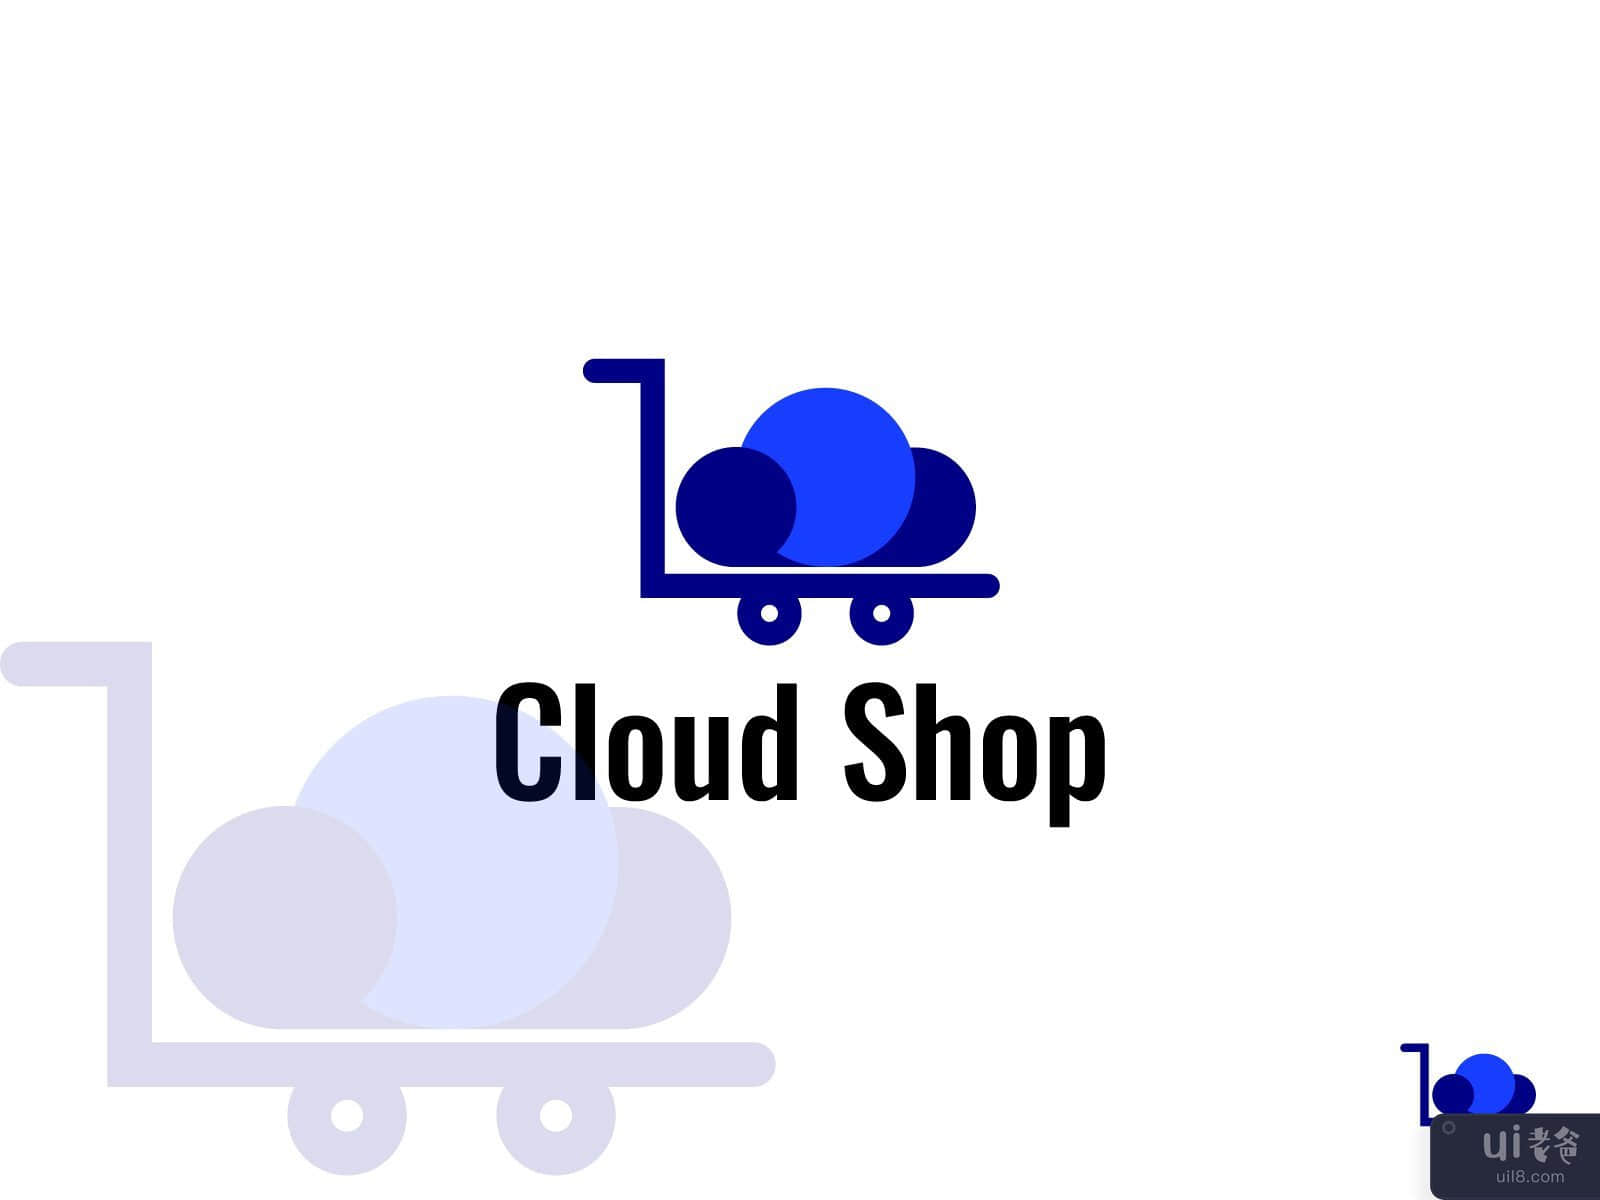 Cloud Shop logo, Shop logo, Cloud logo